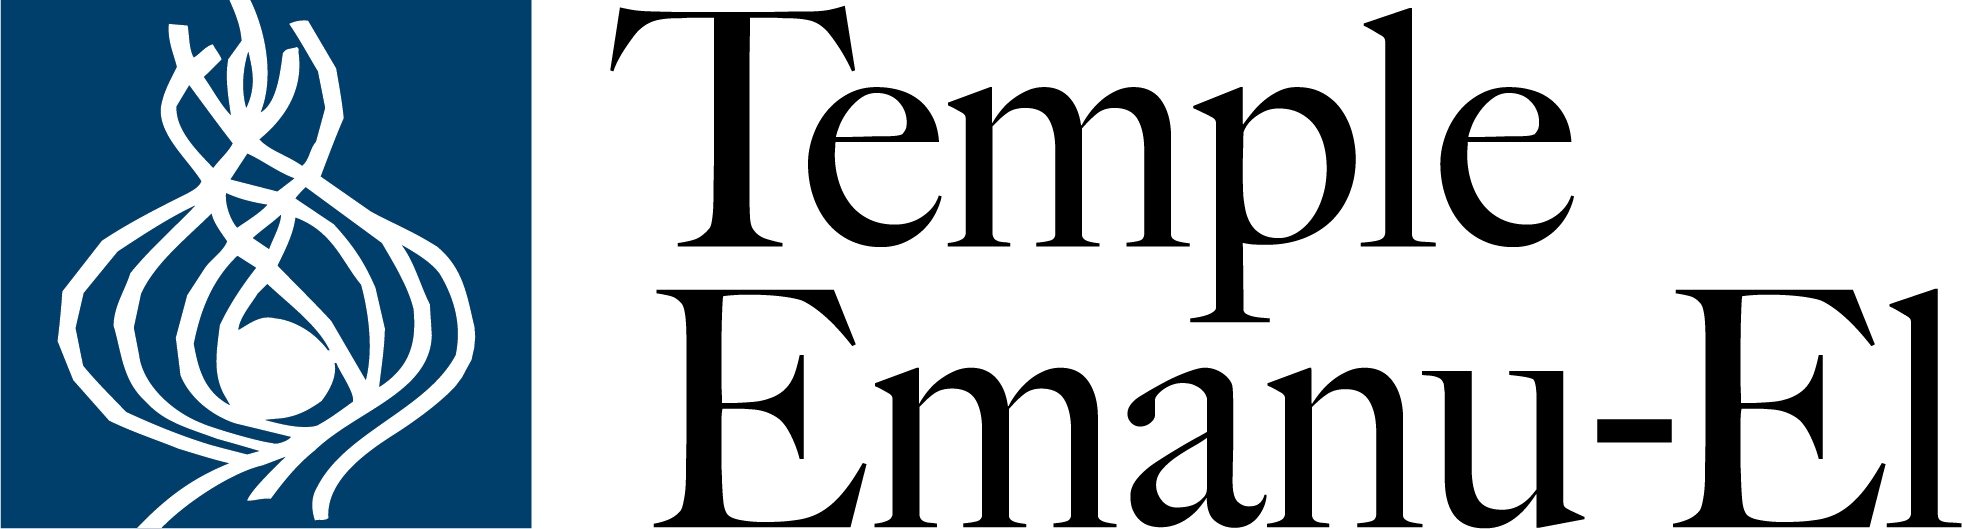 Temple Emanu-El - logo